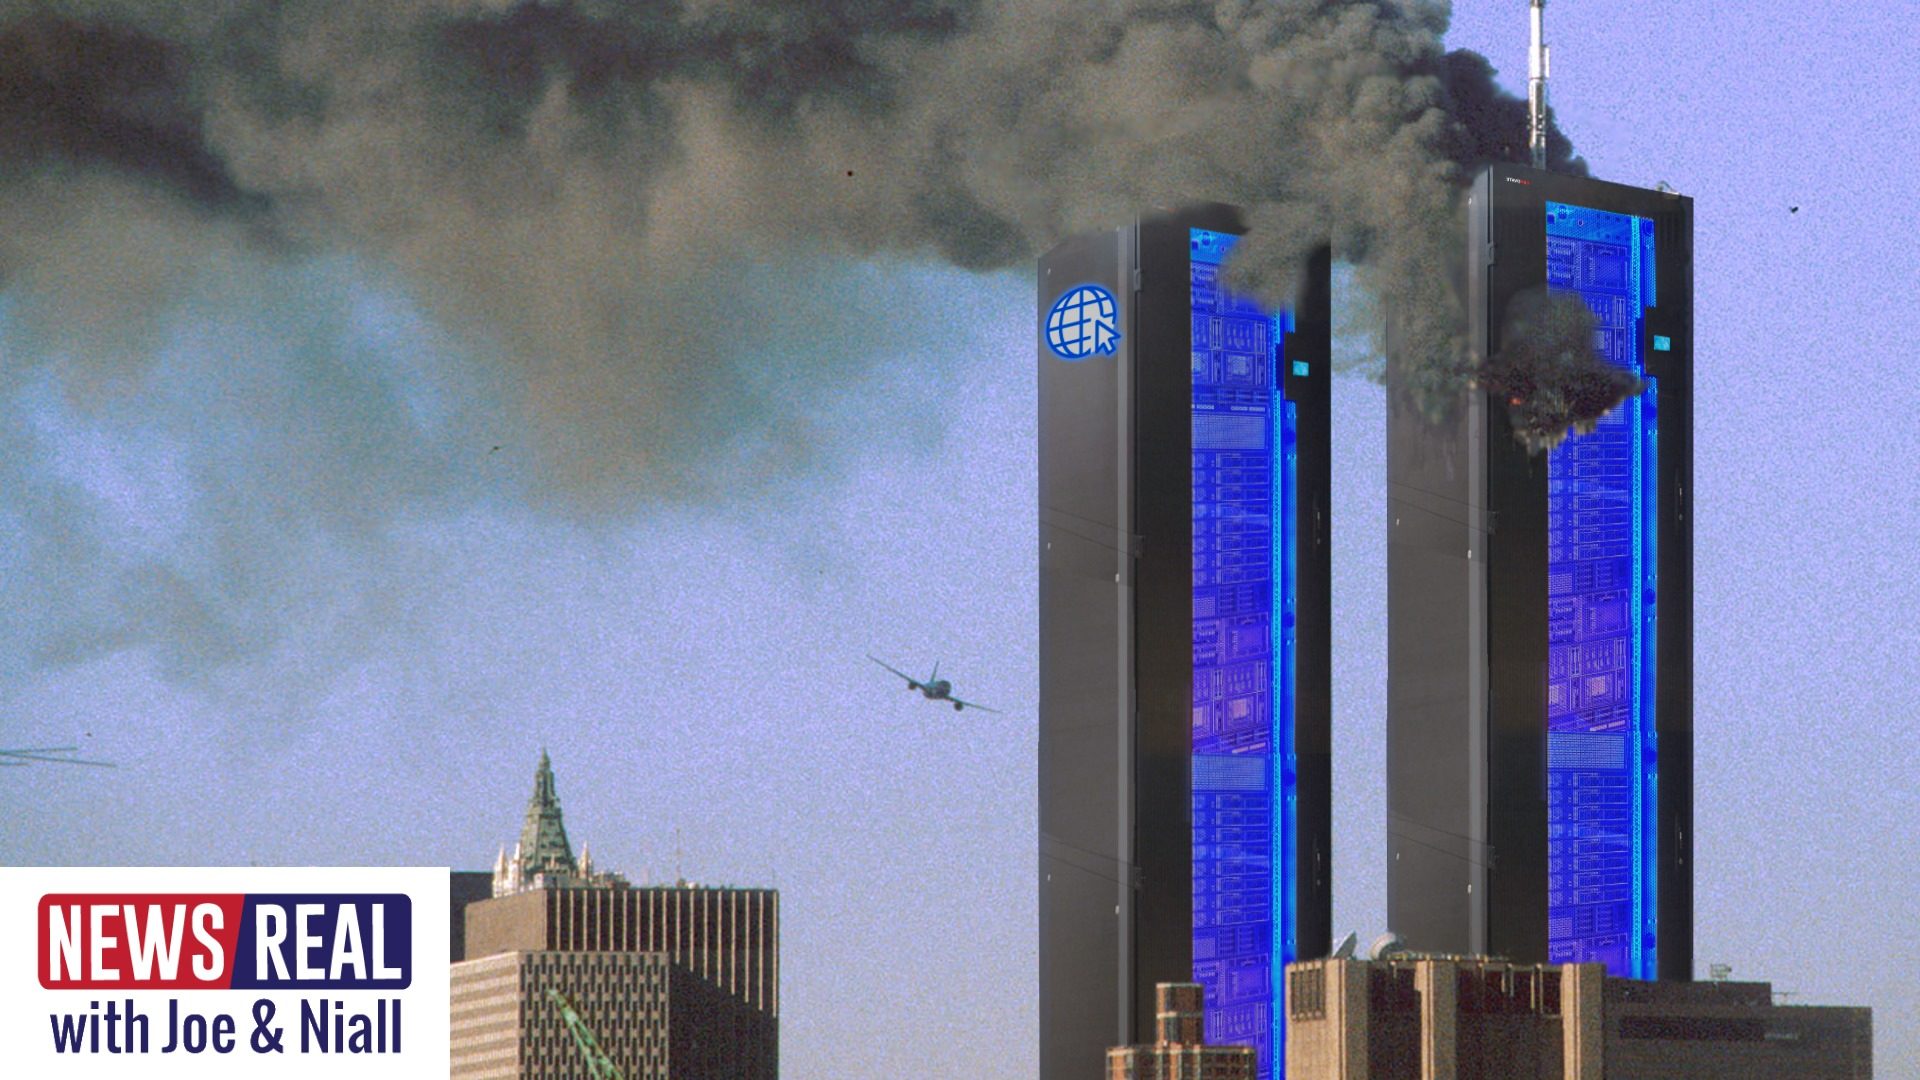 newsreal 9/11 kill internet